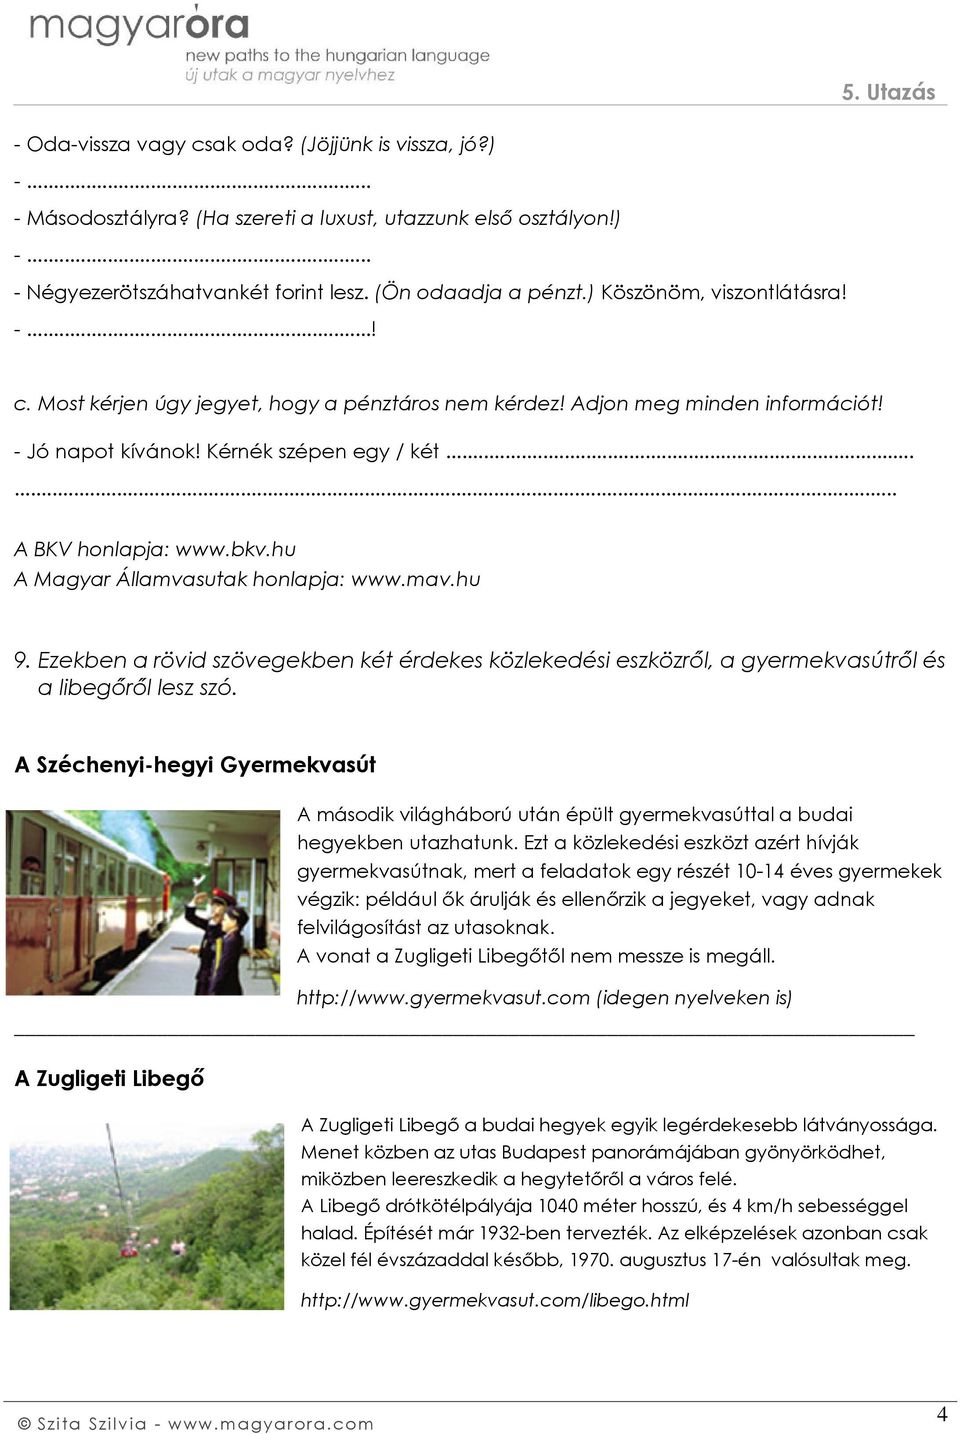 hu A Magyar Államvasutak honlapja: www.mav.hu 9. Ezekben a rövid szövegekben két érdekes közlekedési eszközről, a gyermekvasútről és a libegőről lesz szó.